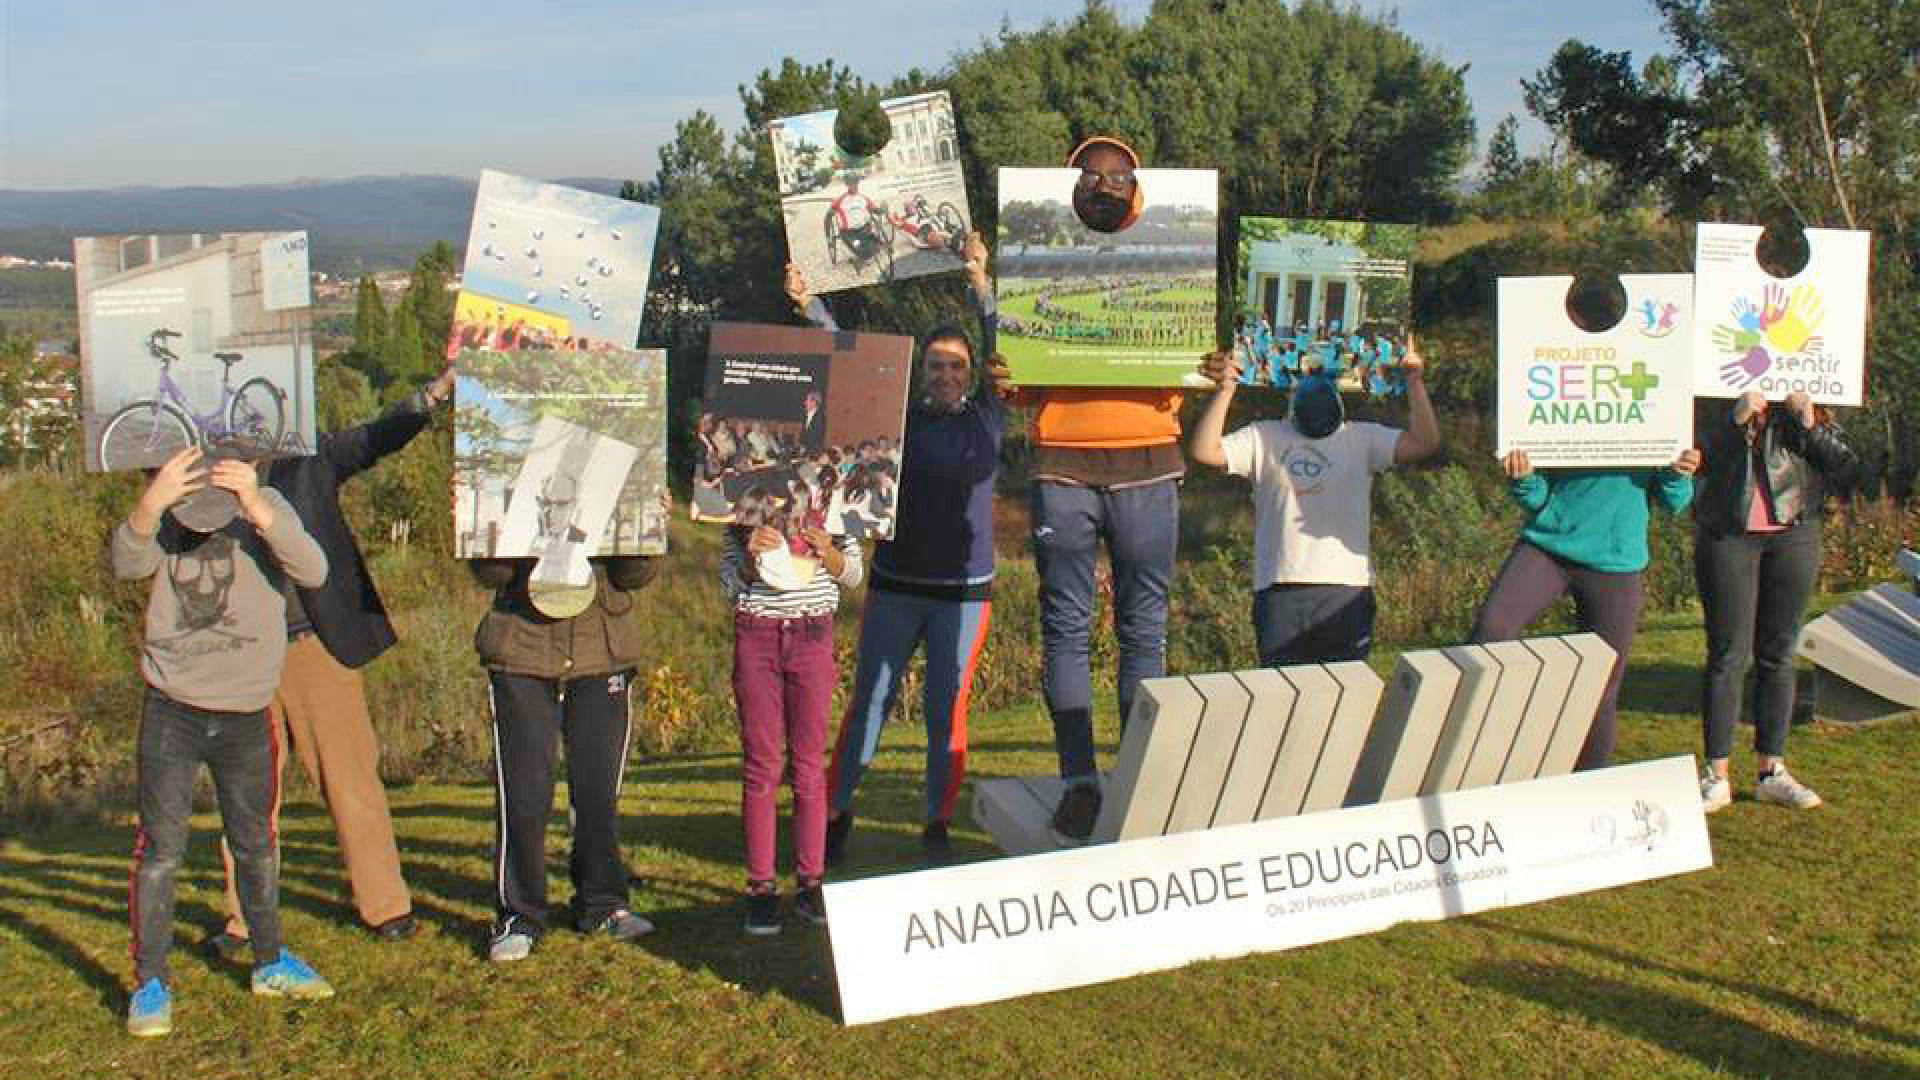 Anadia celebra Dia Internacional da Cidade Educadora